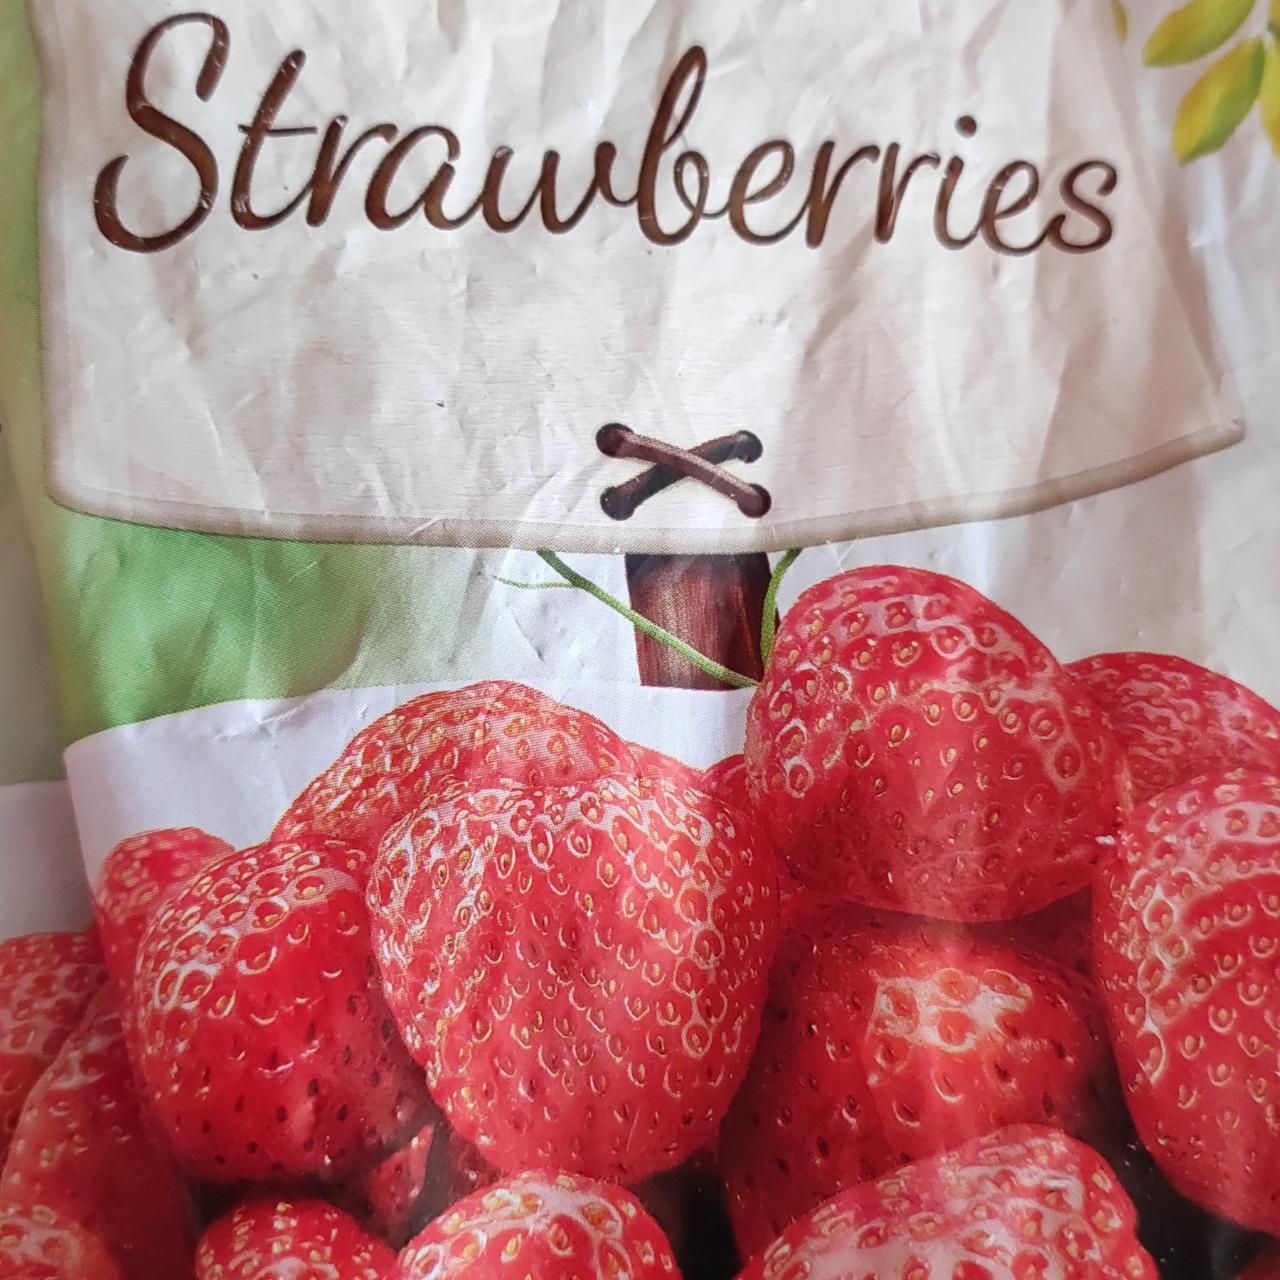 Képek - Strawberries fagyasztott eper Green Grocer's